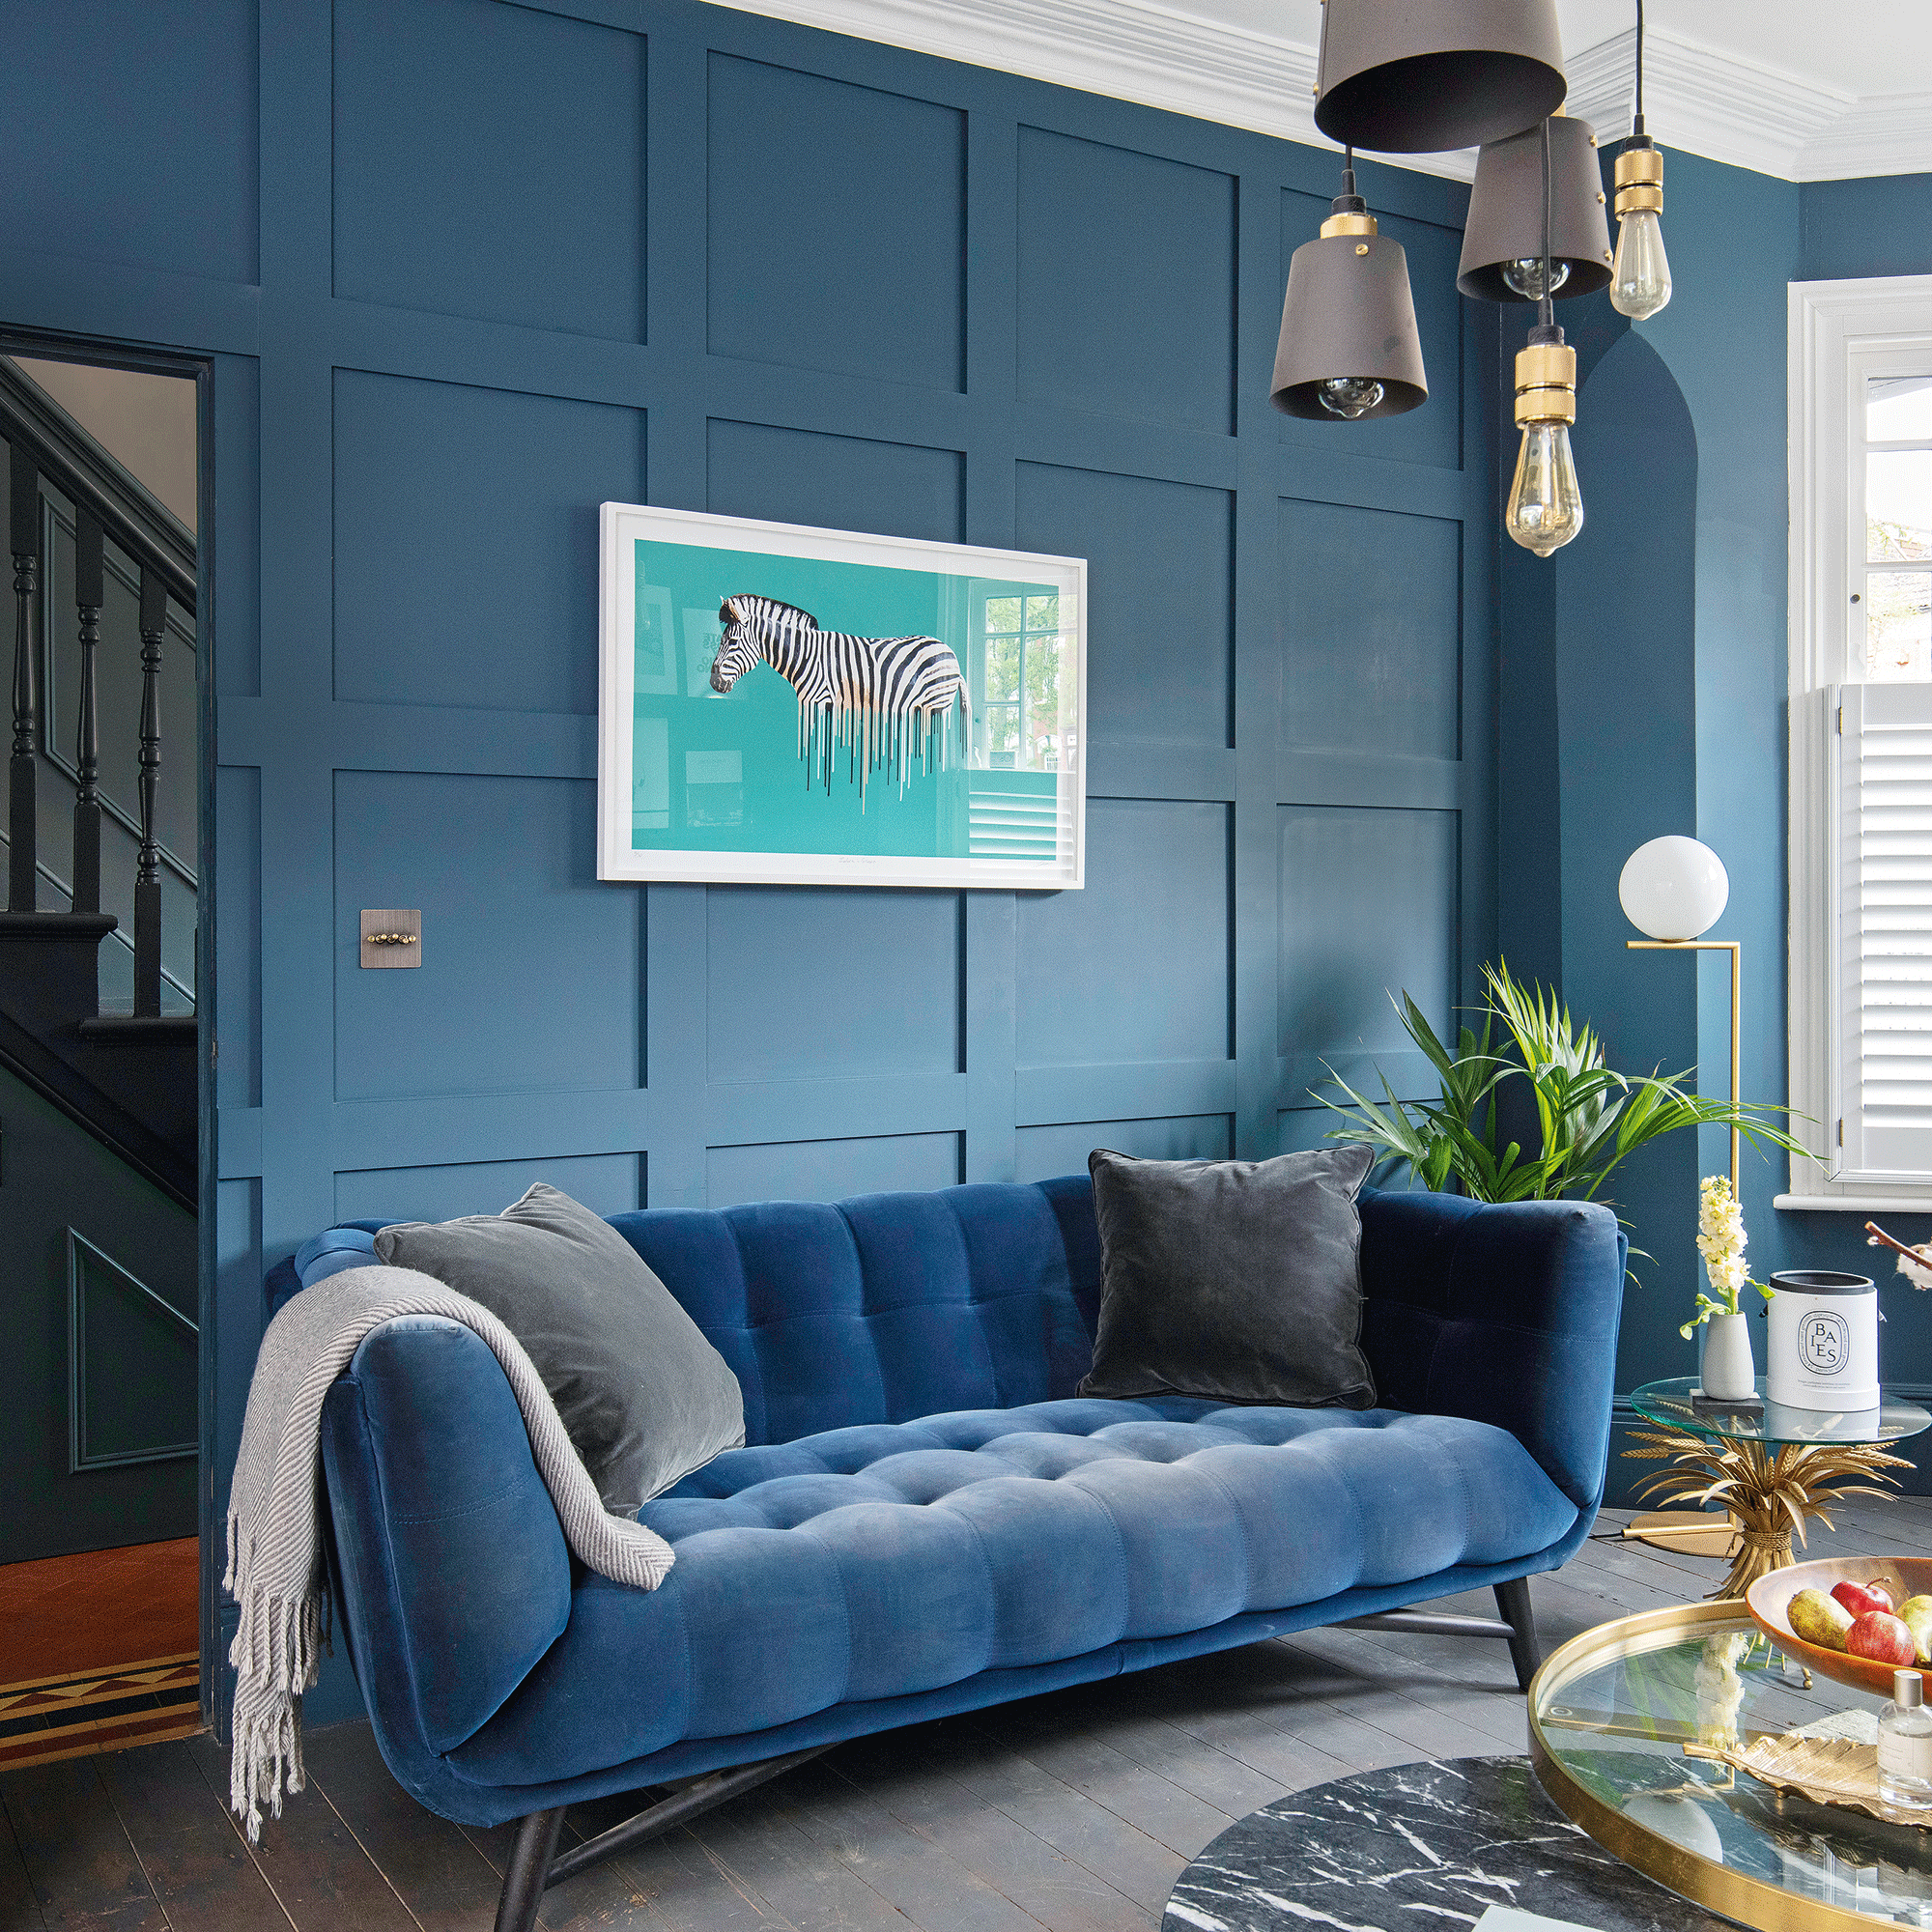 Navy blue velvet sofa in blue living room